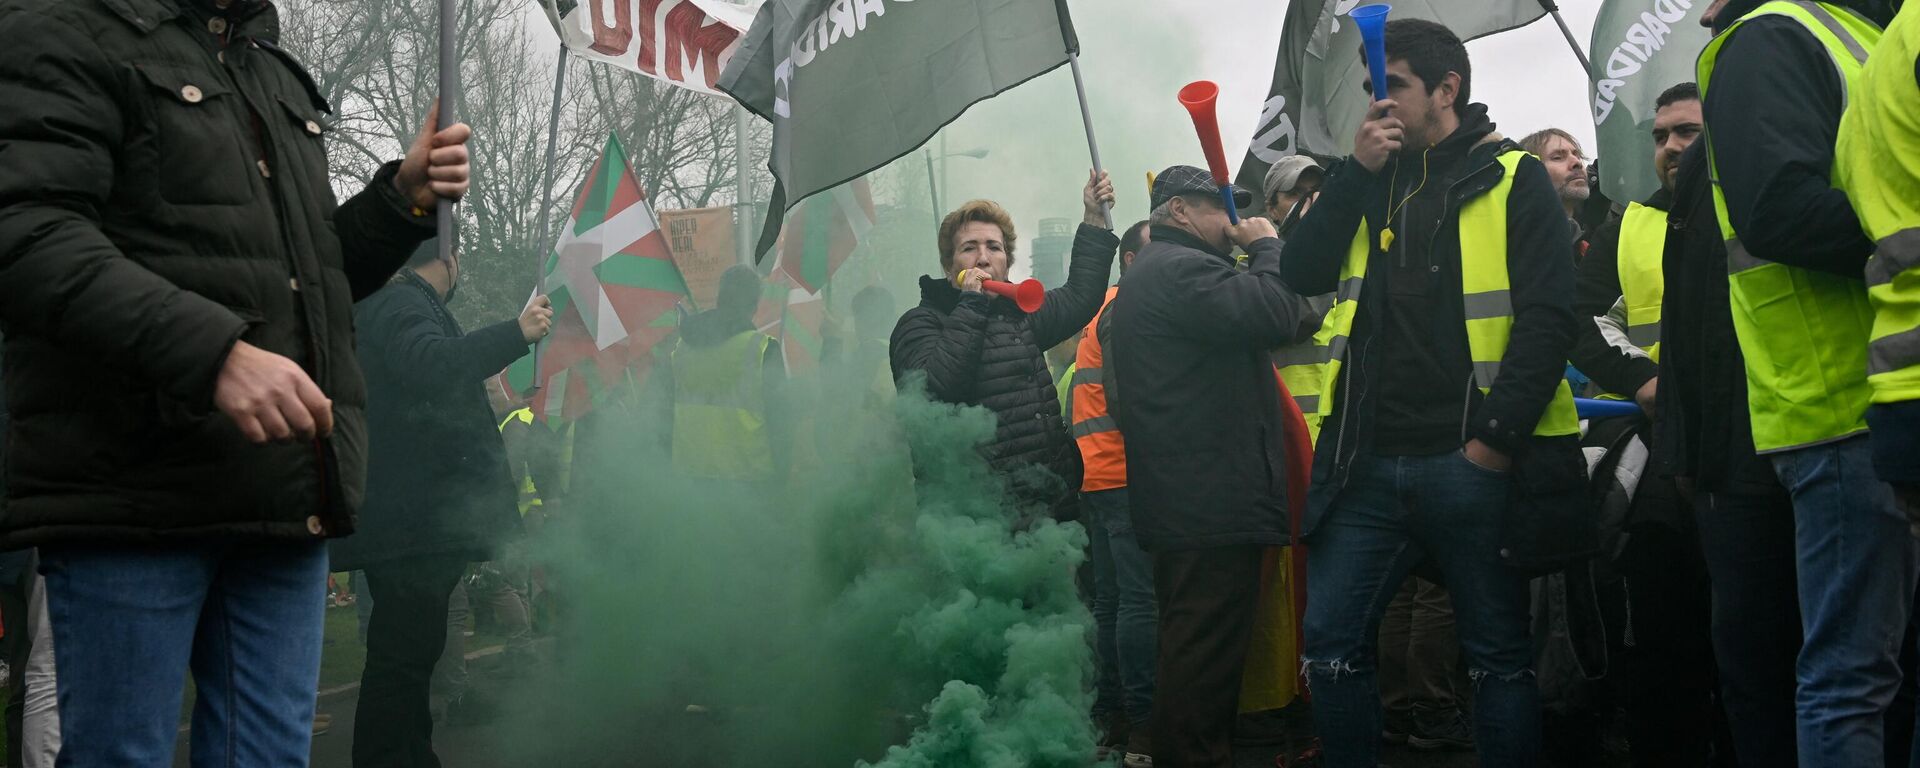 Демонстранты машут профсоюзными флагами Солидаридад во время акции протеста, организованной бастующими перевозчиками против резкого роста цен на топливо в Мадриде - Sputnik Абхазия, 1920, 25.03.2022